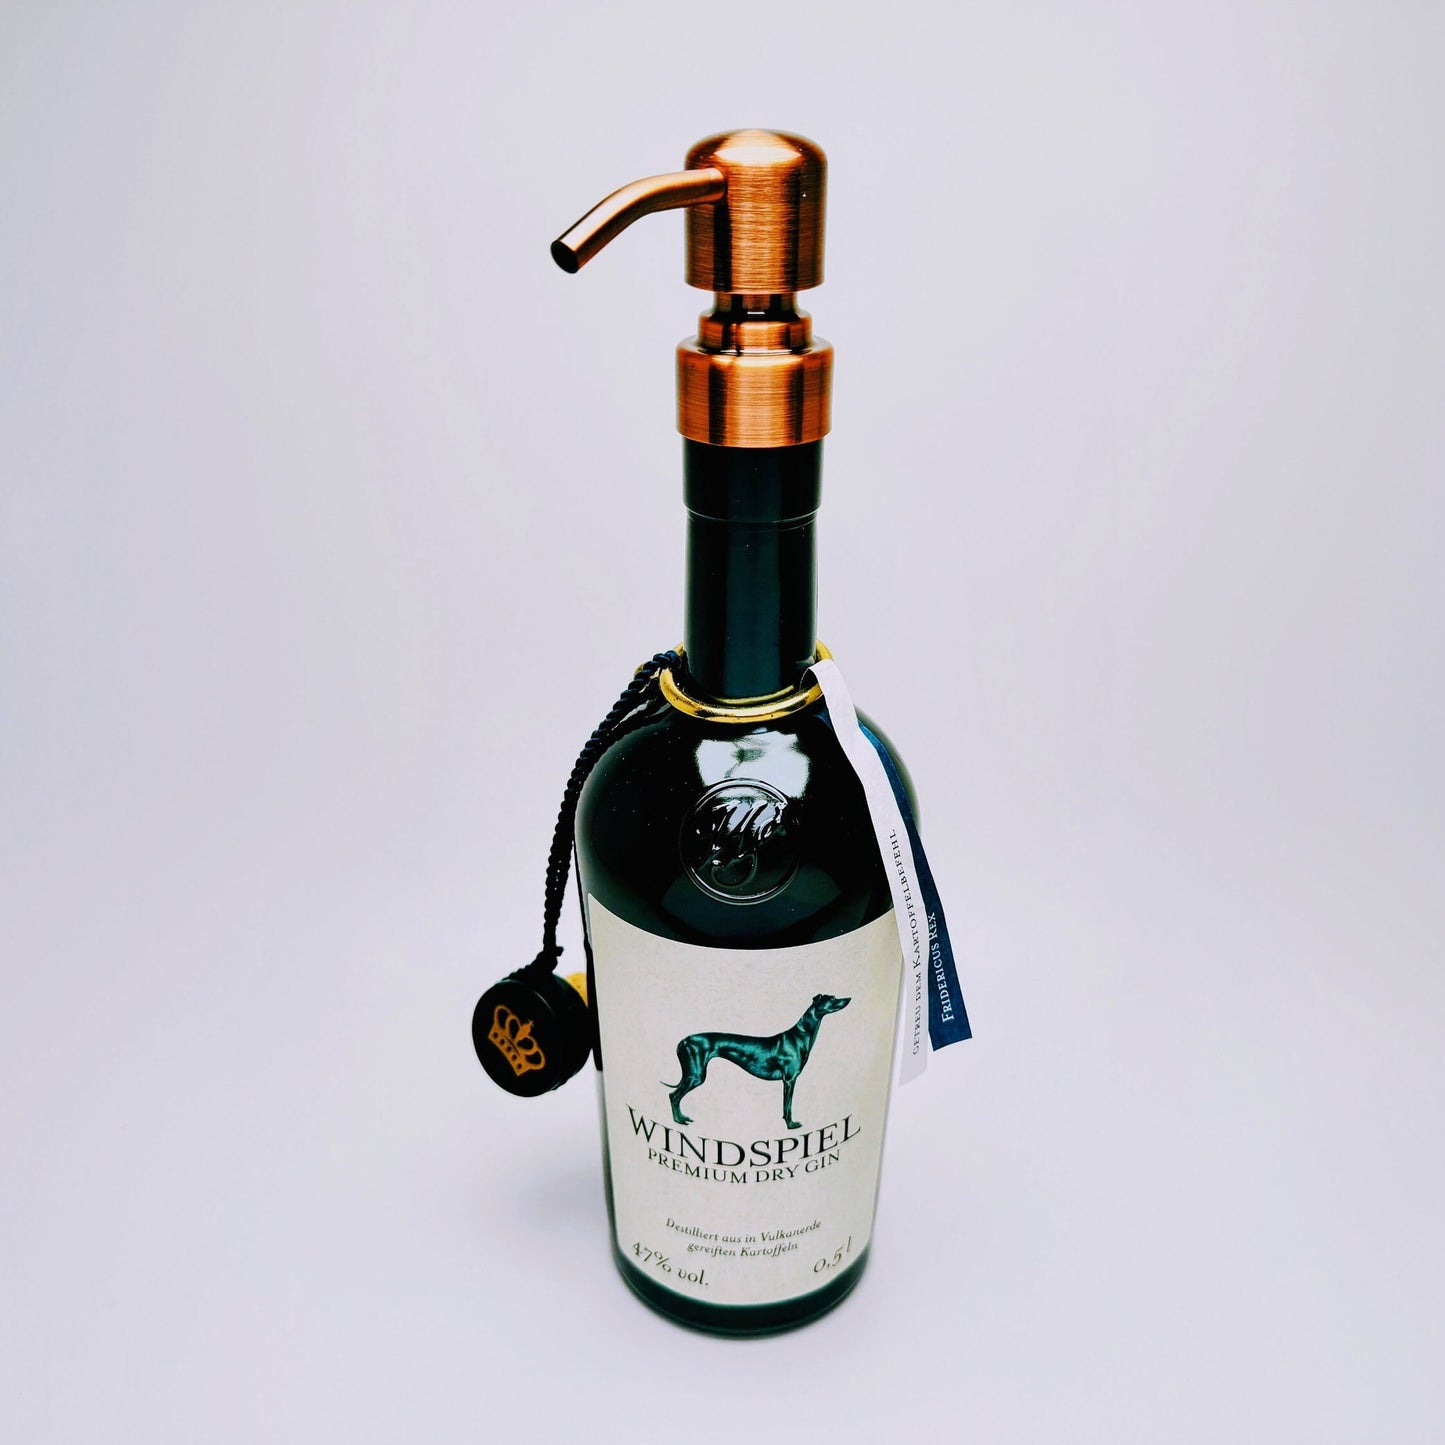 Gin-Seifenspender "Windspiel" | Upcycling Pumpspender aus Windspiel Gin Flaschen | Nachfüllbar mit Seife, Spüli | Bad Deko | Geschenk Eifel